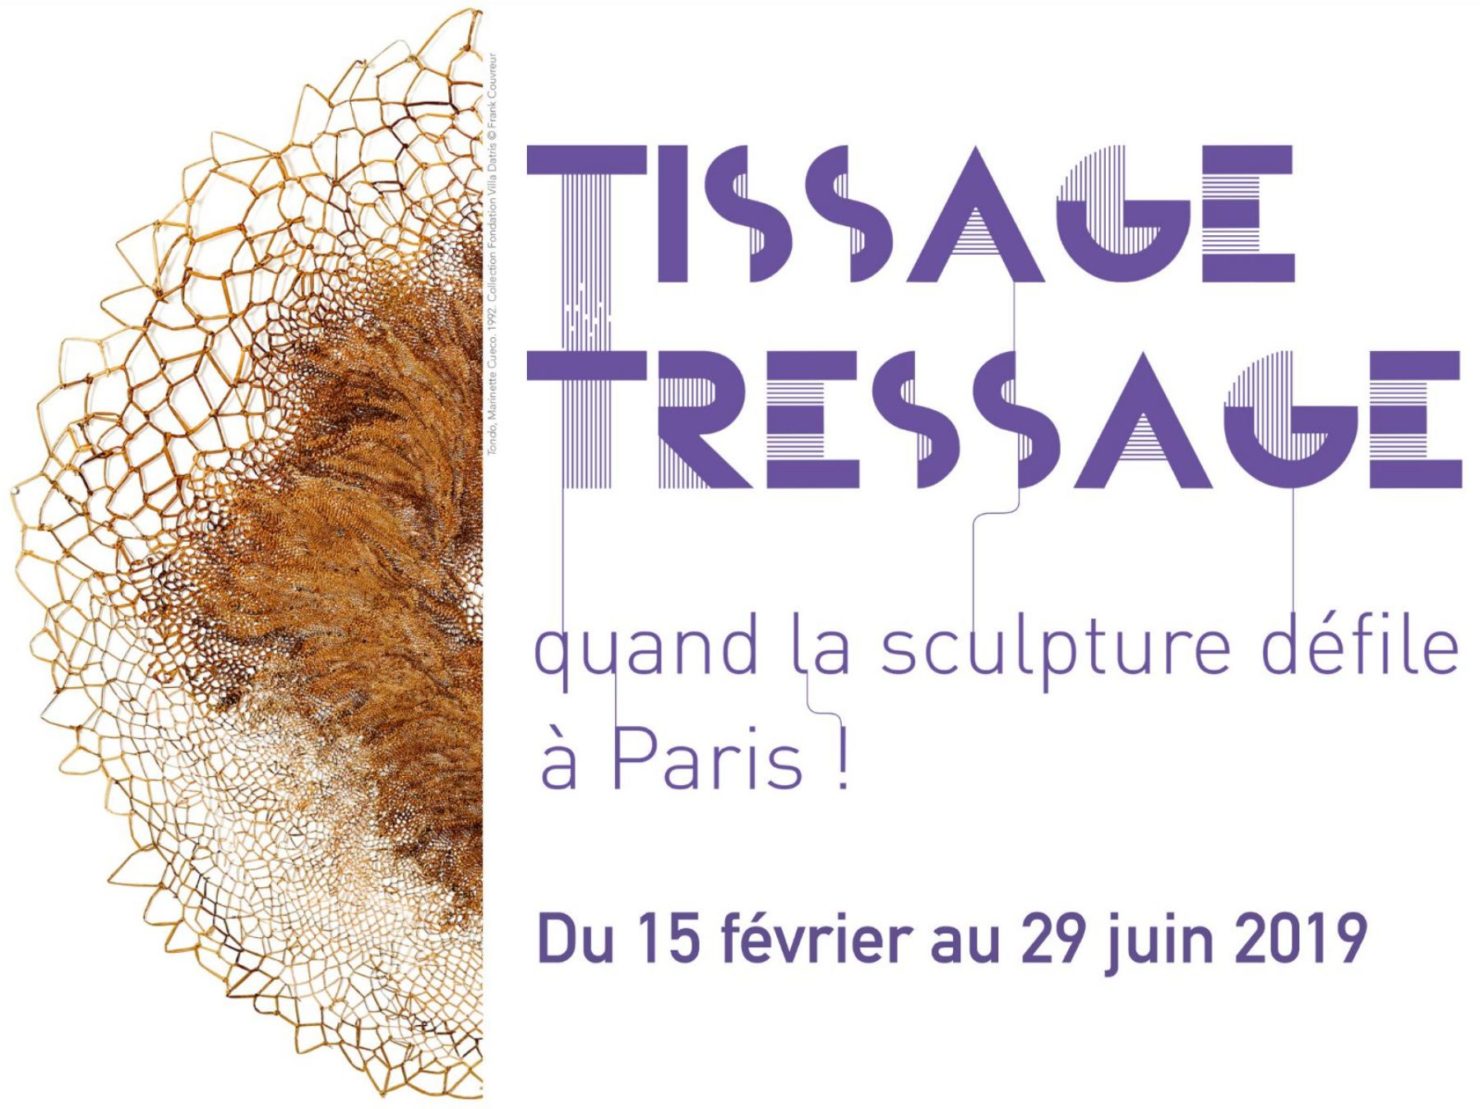 15.02.2019 – 29.06.2019 | Tissage Tressauge. Quand la sculpture défile – FONDATION VILLA DATRIS I Paris